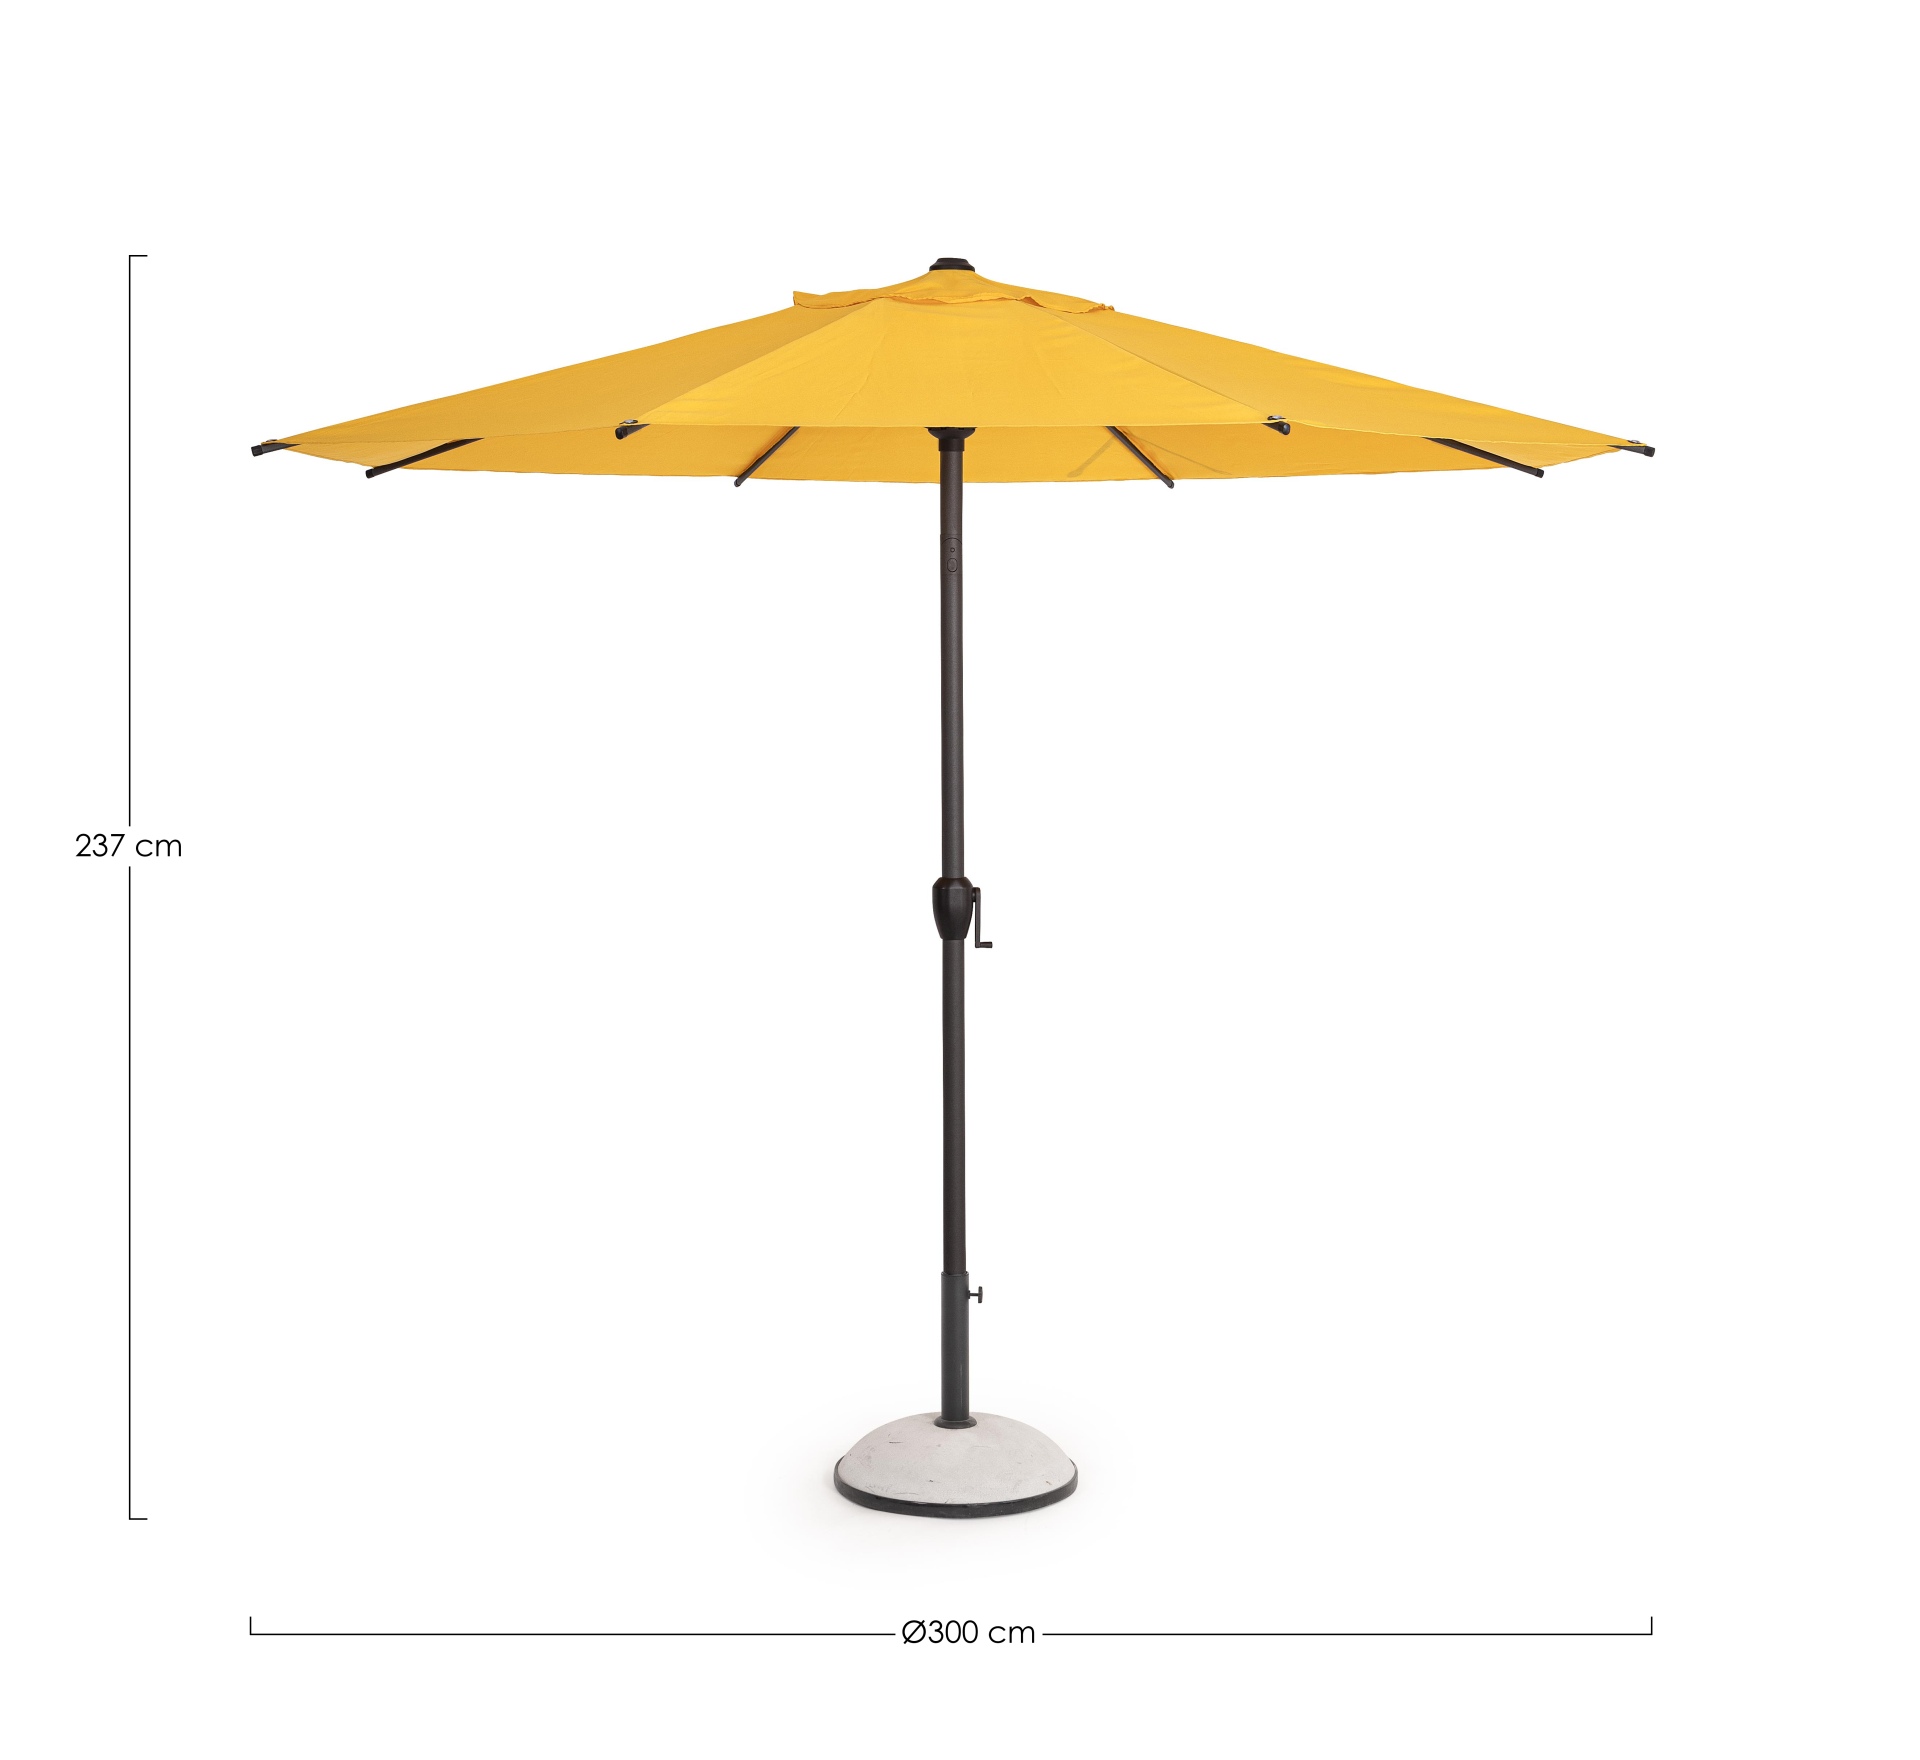 Der Sonnenschirm Rio überzeugt mit seinem klassischen Design. Gefertigt wurde er aus einer Polyester Plane, welche einen gelben Farbton besitzt. Das Gestell ist aus Aluminium und hat eine Anthrazit Farbe. Der Sonnenschirm verfügt über einen Durchmesser vo